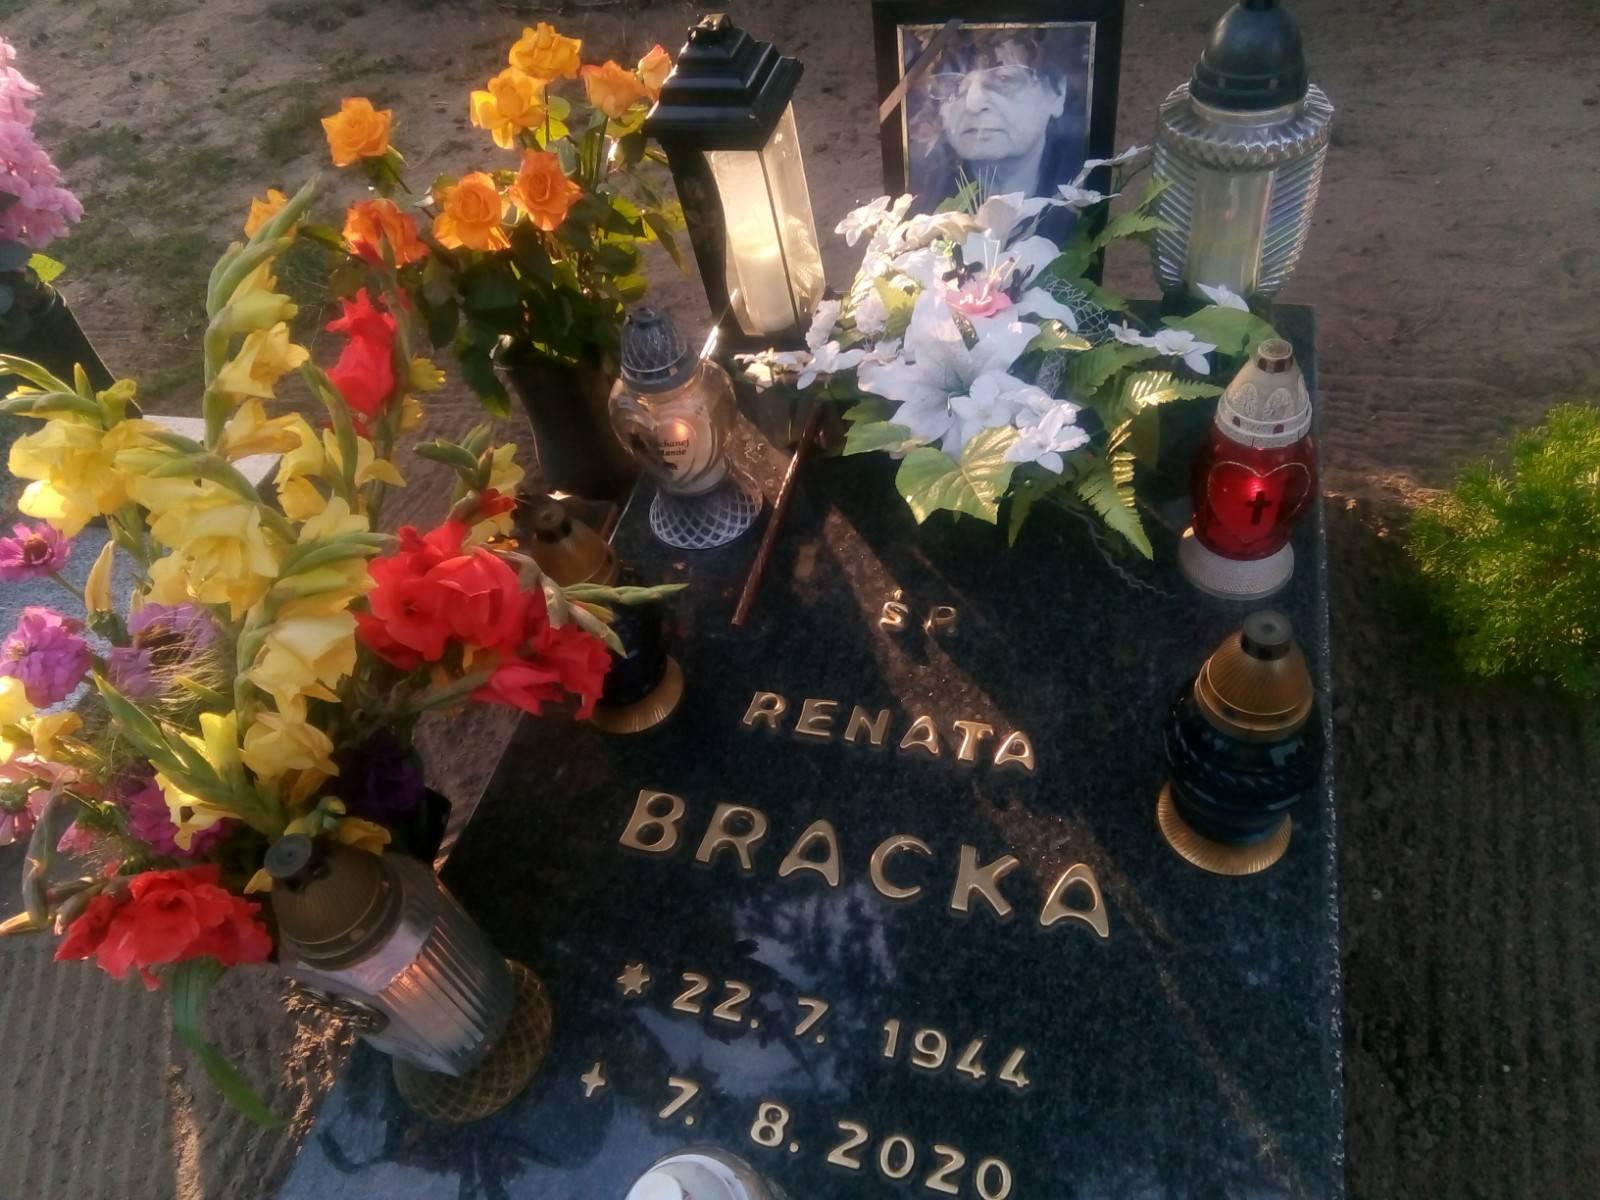 Dziś 11 sierpnia mija pierwsza rocznica pogrzebu mojej ukochanej Mamy ś.p. Renaty BRACKA, która spoczęła na cmentarzu komunalnym w Więcborku 11 sierpnia 2020 r.